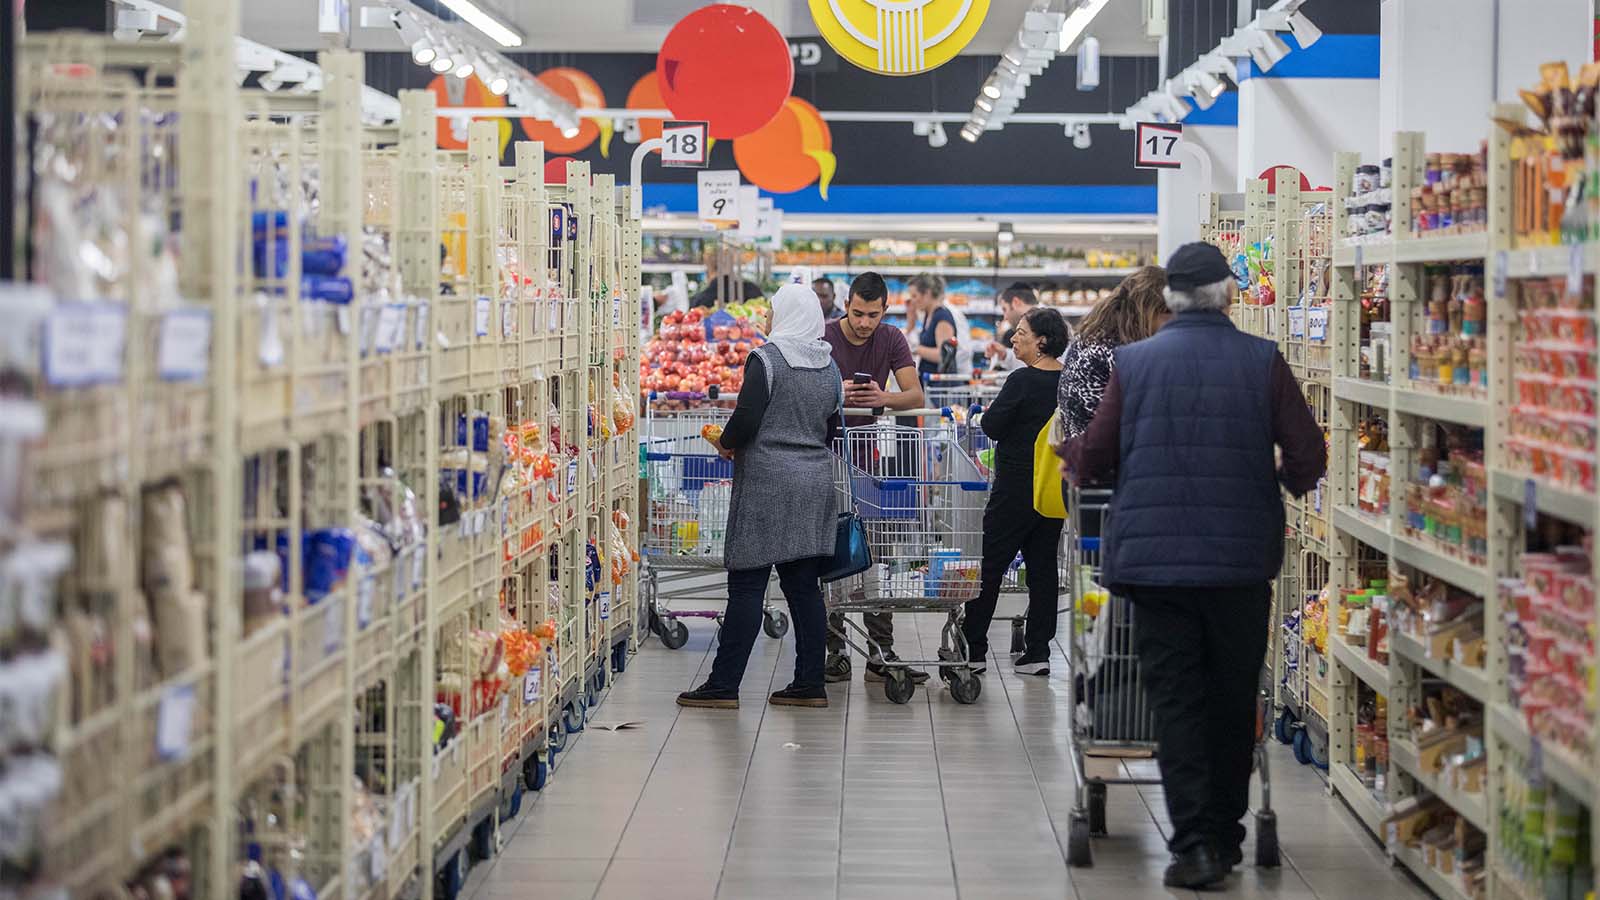 أشخاص يقومون بالتسوق في سوبر ماركت في القدس. الذين يظهرون في الصورة ليست لهم علاقة في التقرير (تصوير: يونتان زيندل / فلاش 90).